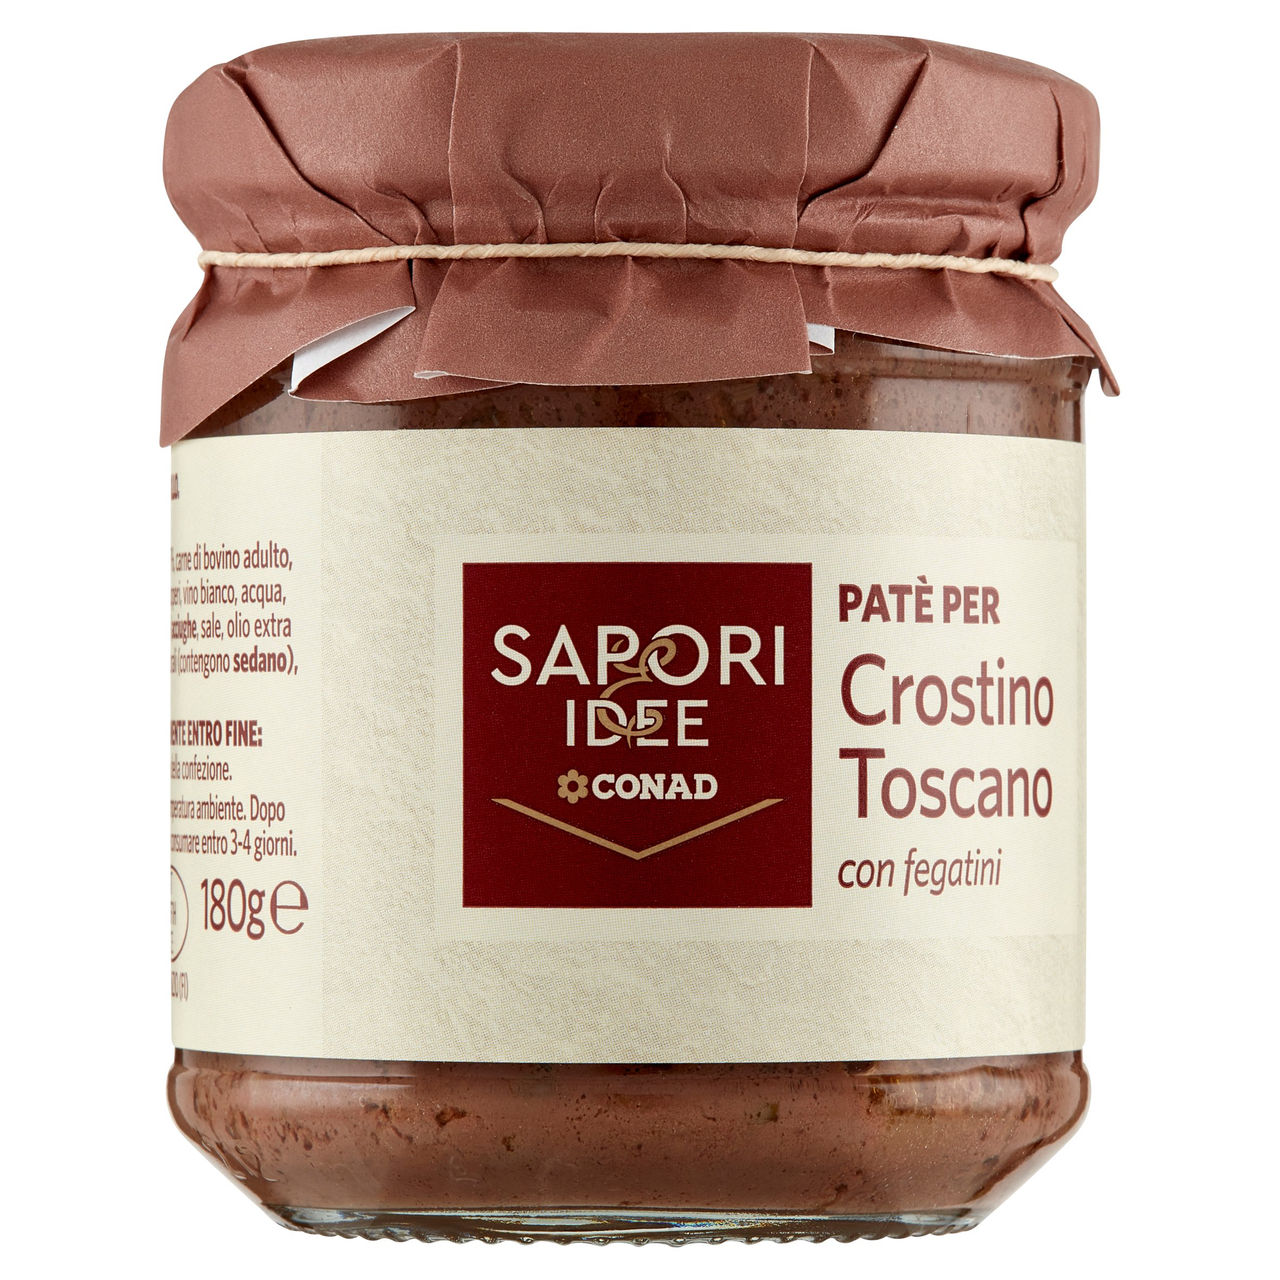 SAPORI & IDEE CONAD Patè per Crostino Toscano con fegatini 180 g